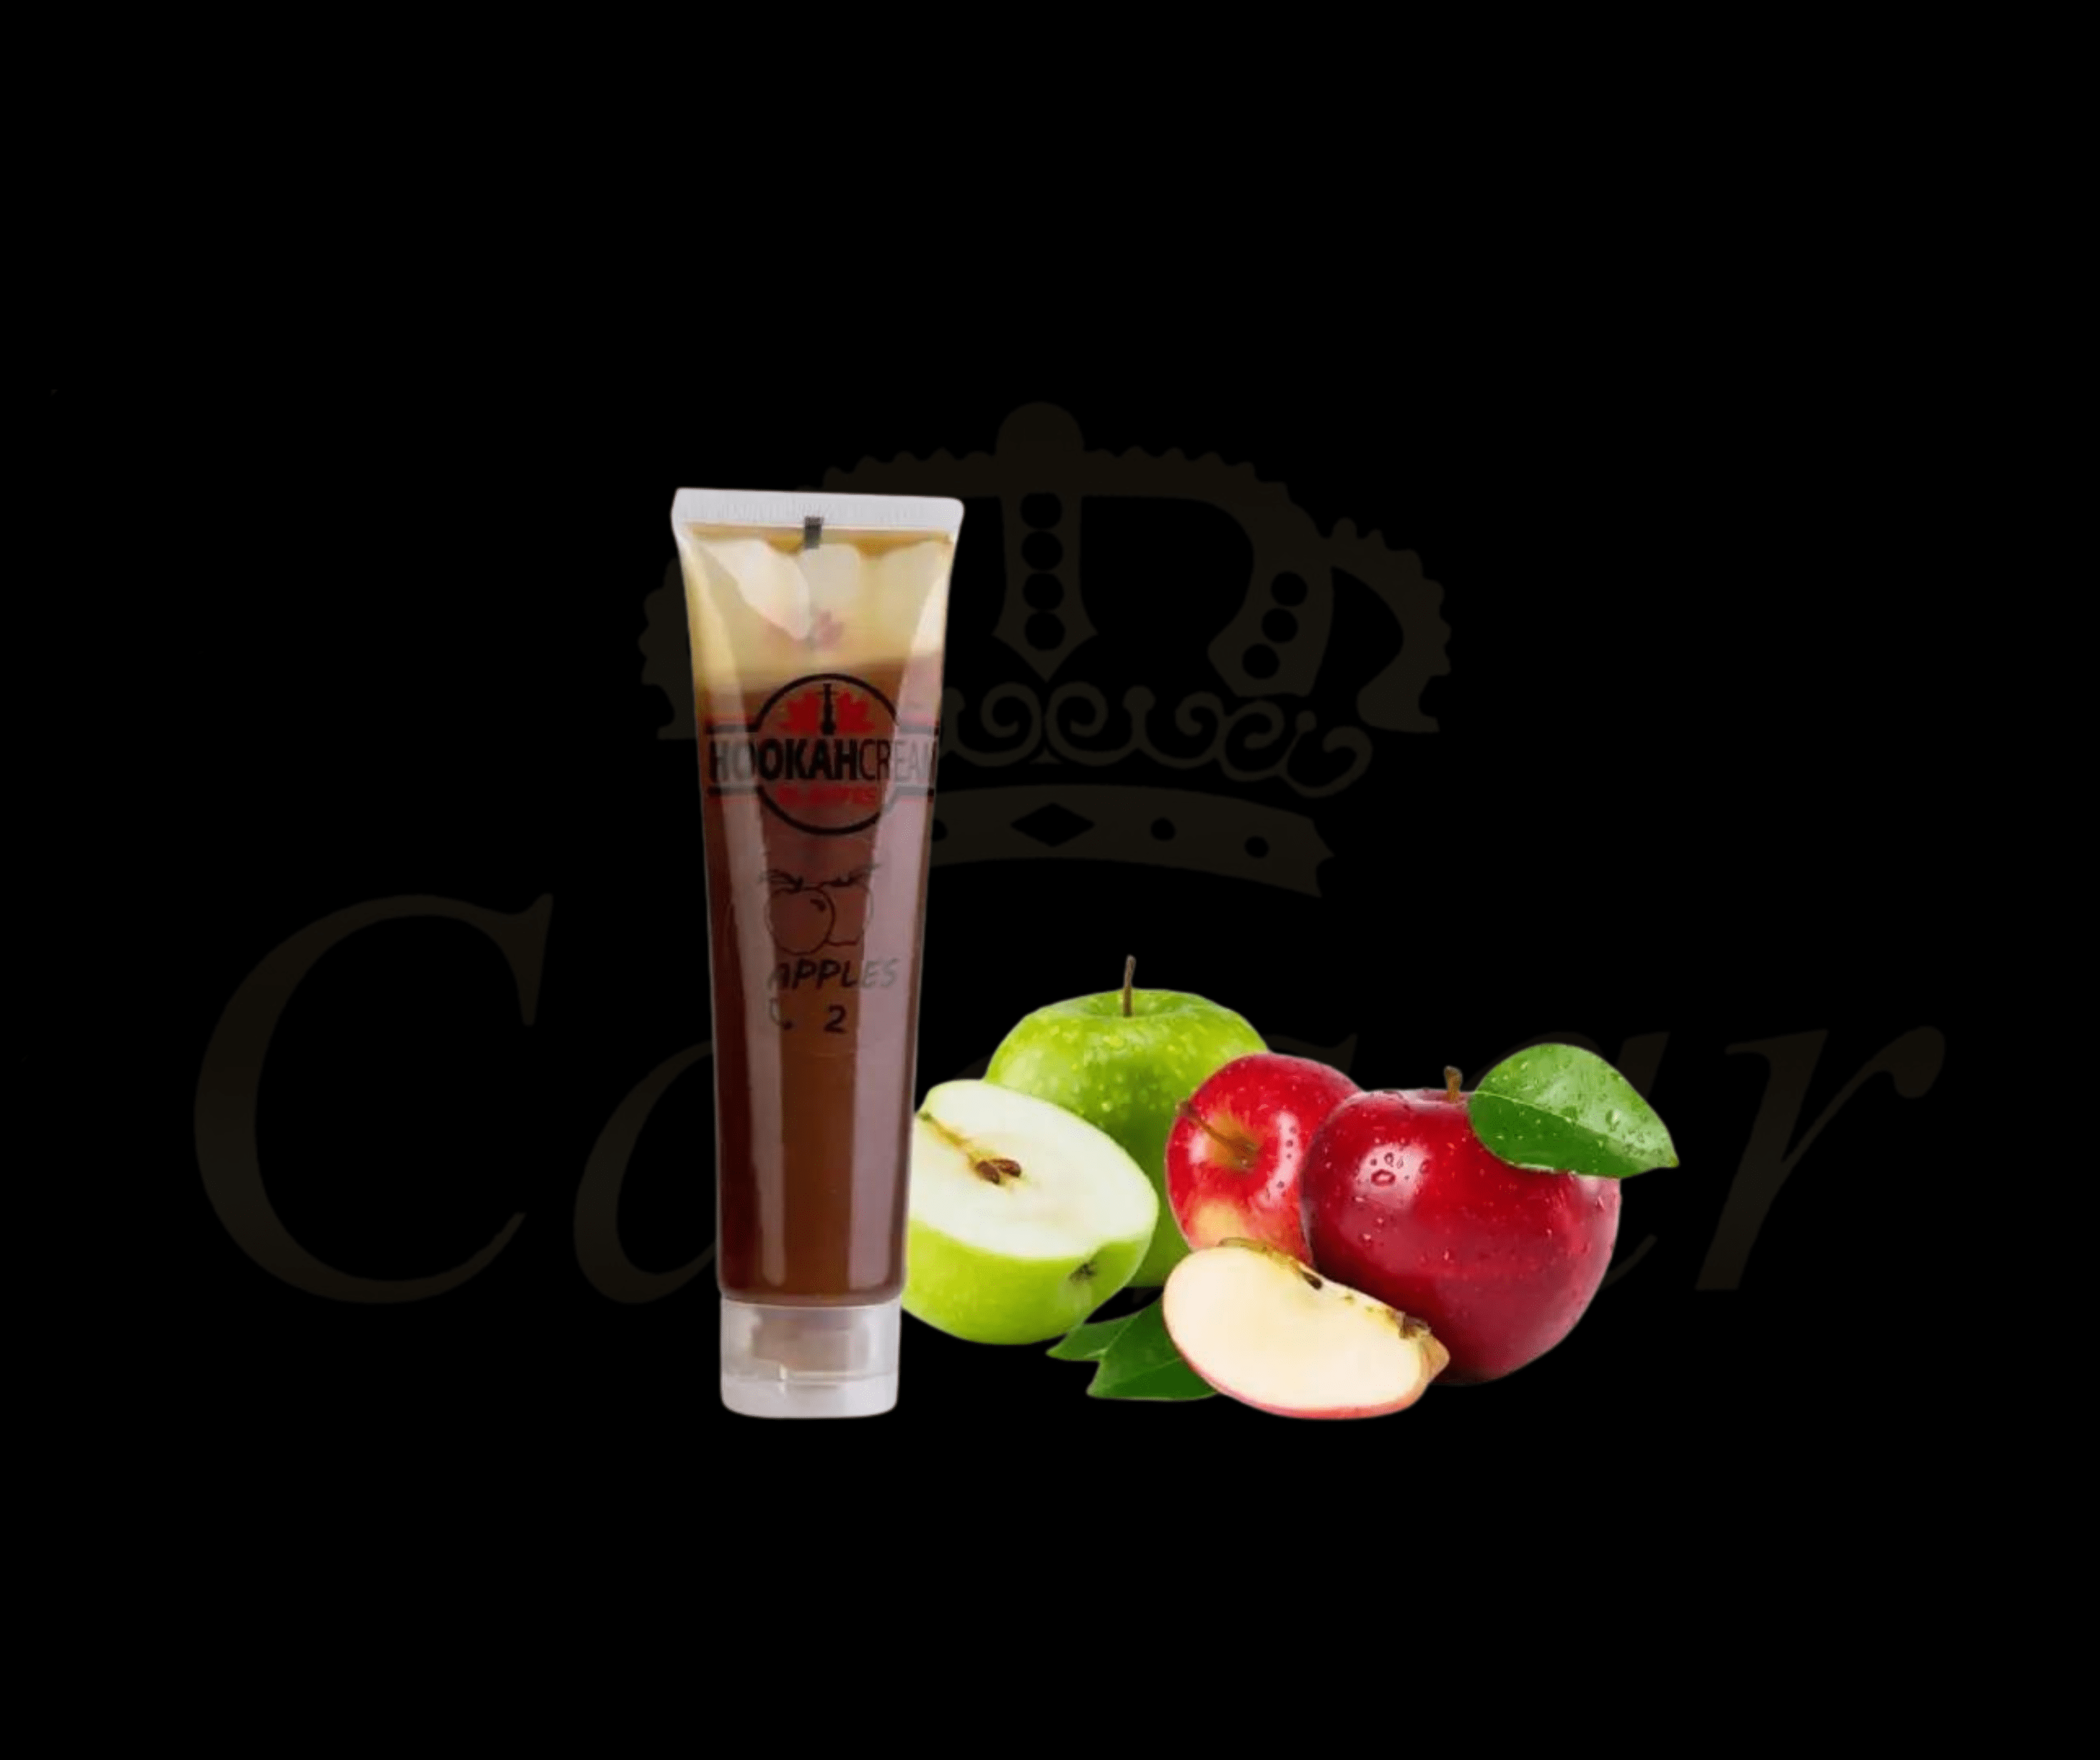 El Nefes Creme - 2 Apples - Caesar Shisha